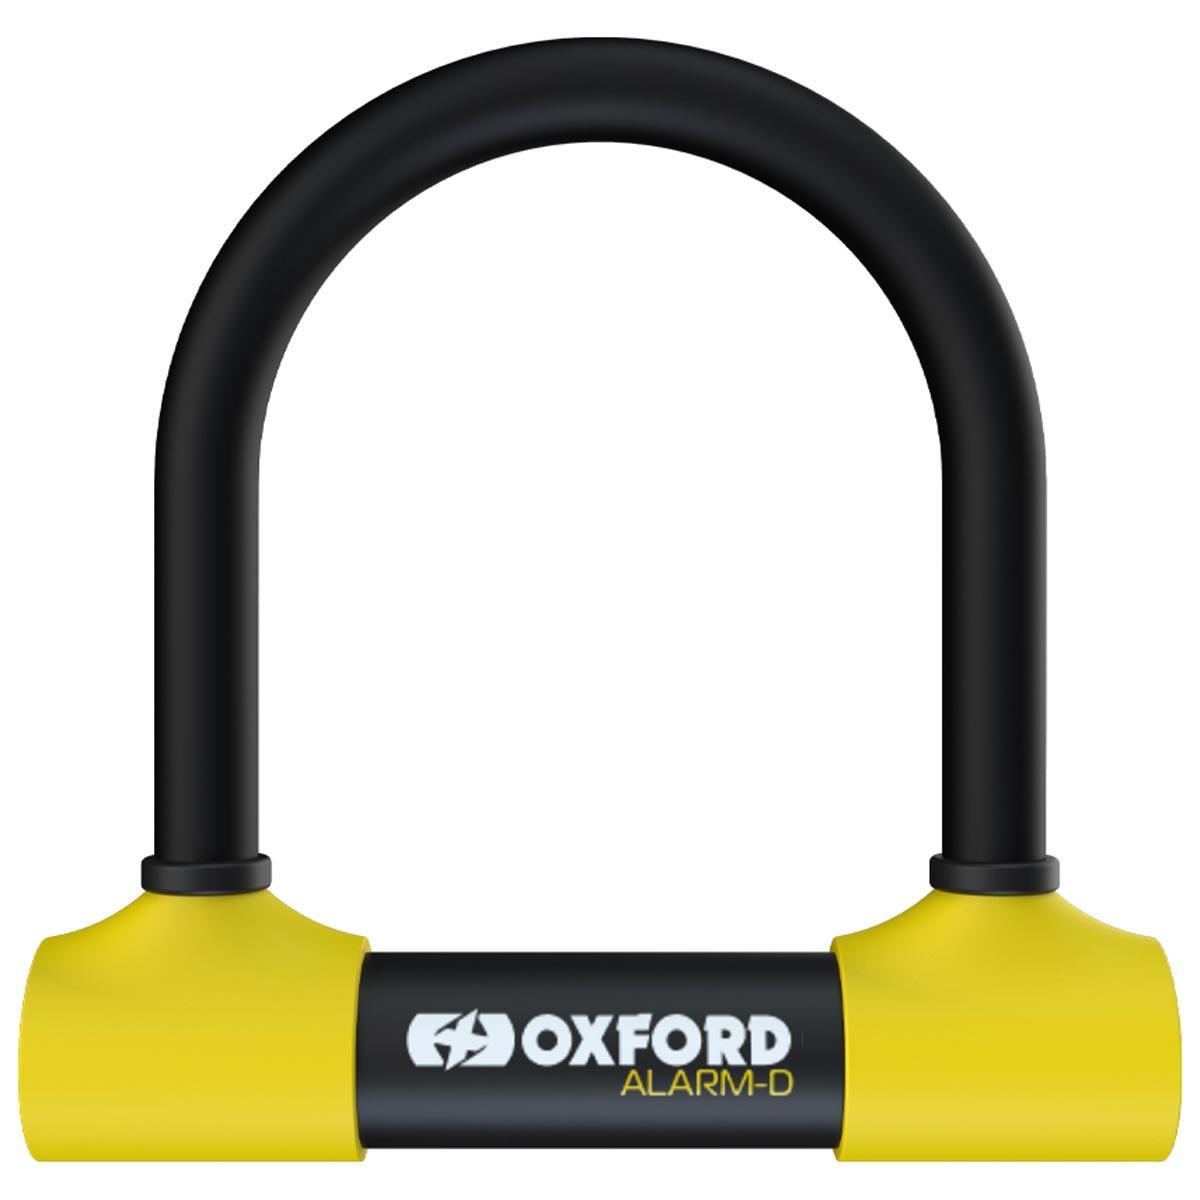 Oxford Alarm-D Lock - 200mmL x 196mmW x 16mm